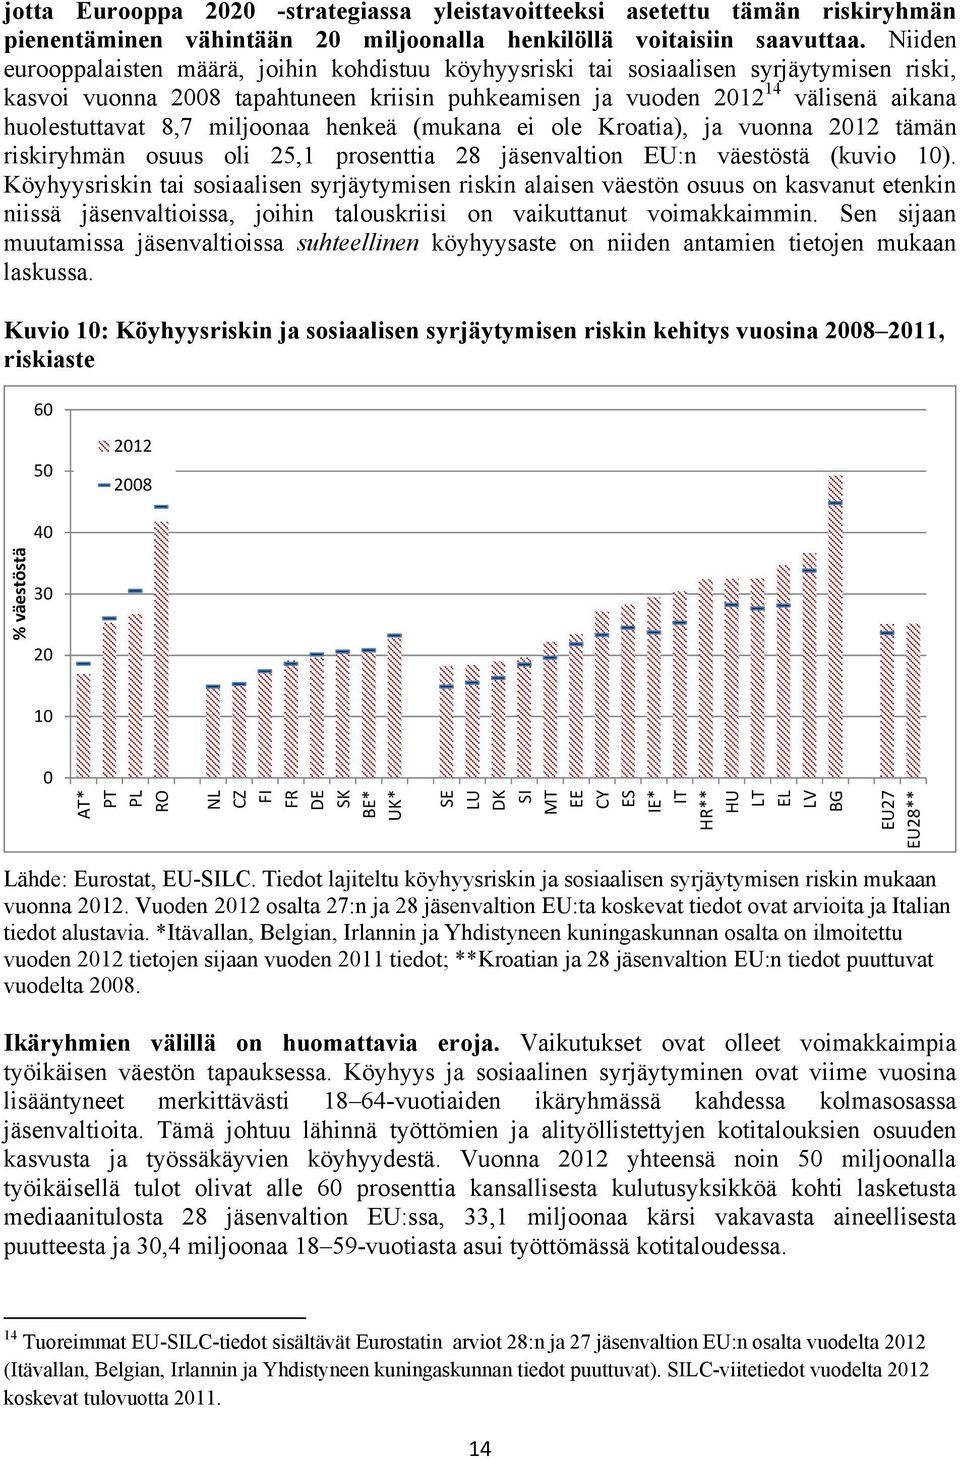 8,7 miljoonaa henkeä (mukana ei ole Kroatia), ja vuonna 2012 tämän riskiryhmän osuus oli 25,1 prosenttia 28 jäsenvaltion EU:n väestöstä (kuvio 10).